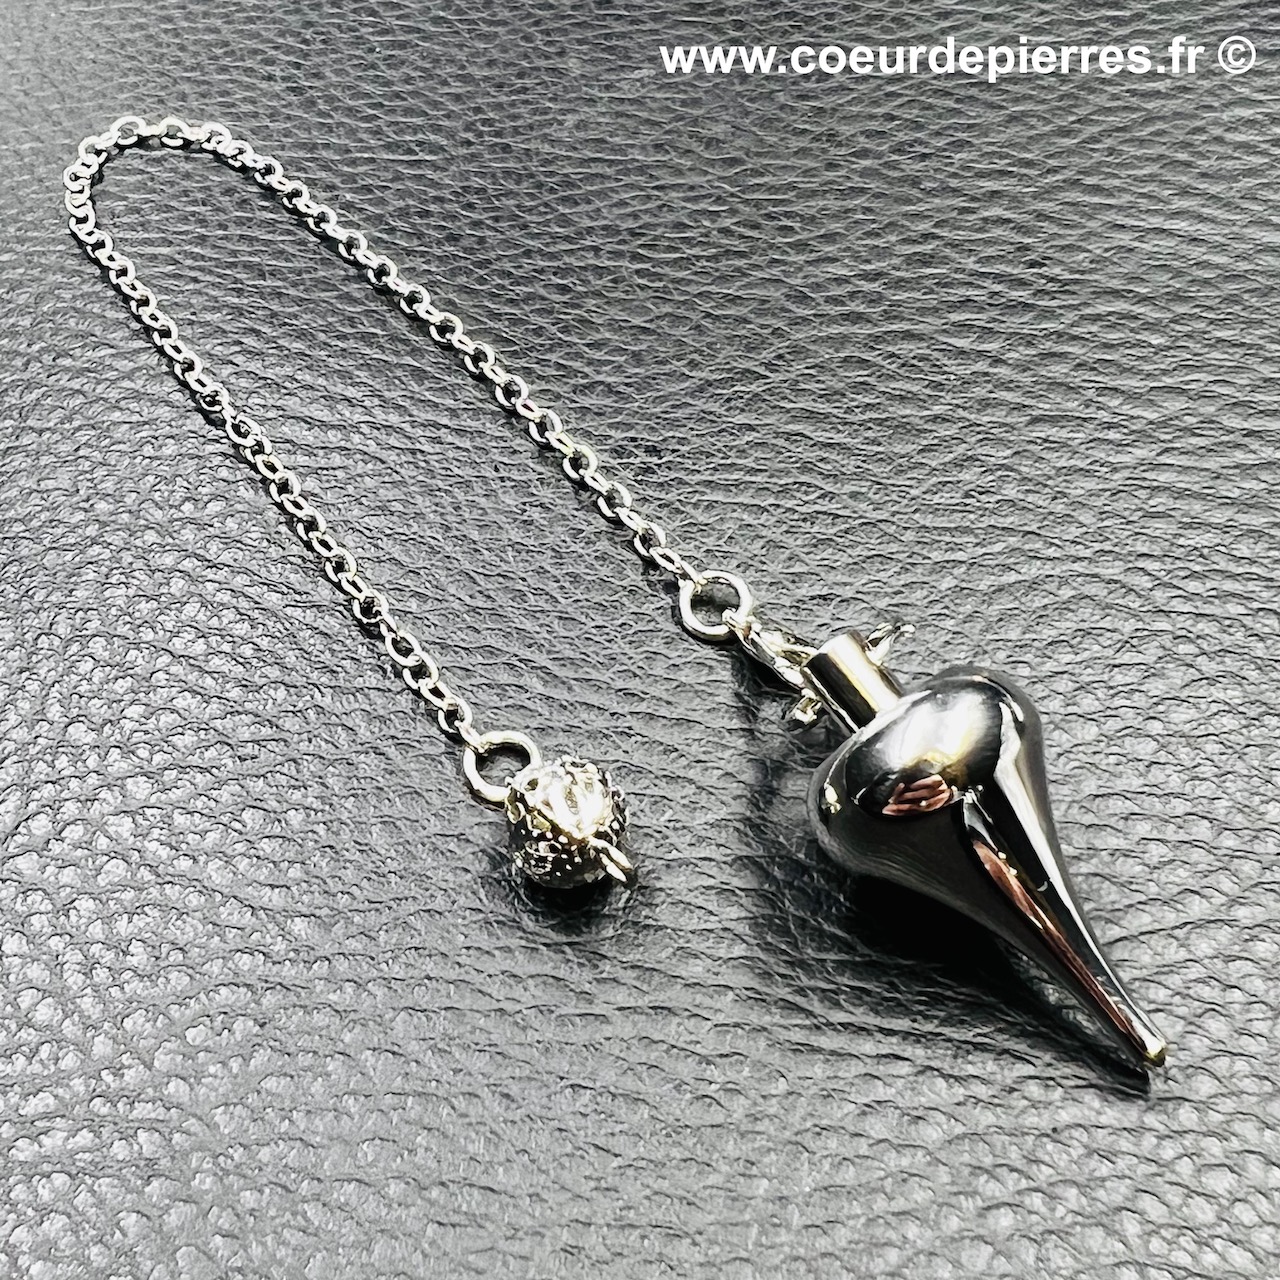 Pendule «conique» en métal argenté (réf pm12)